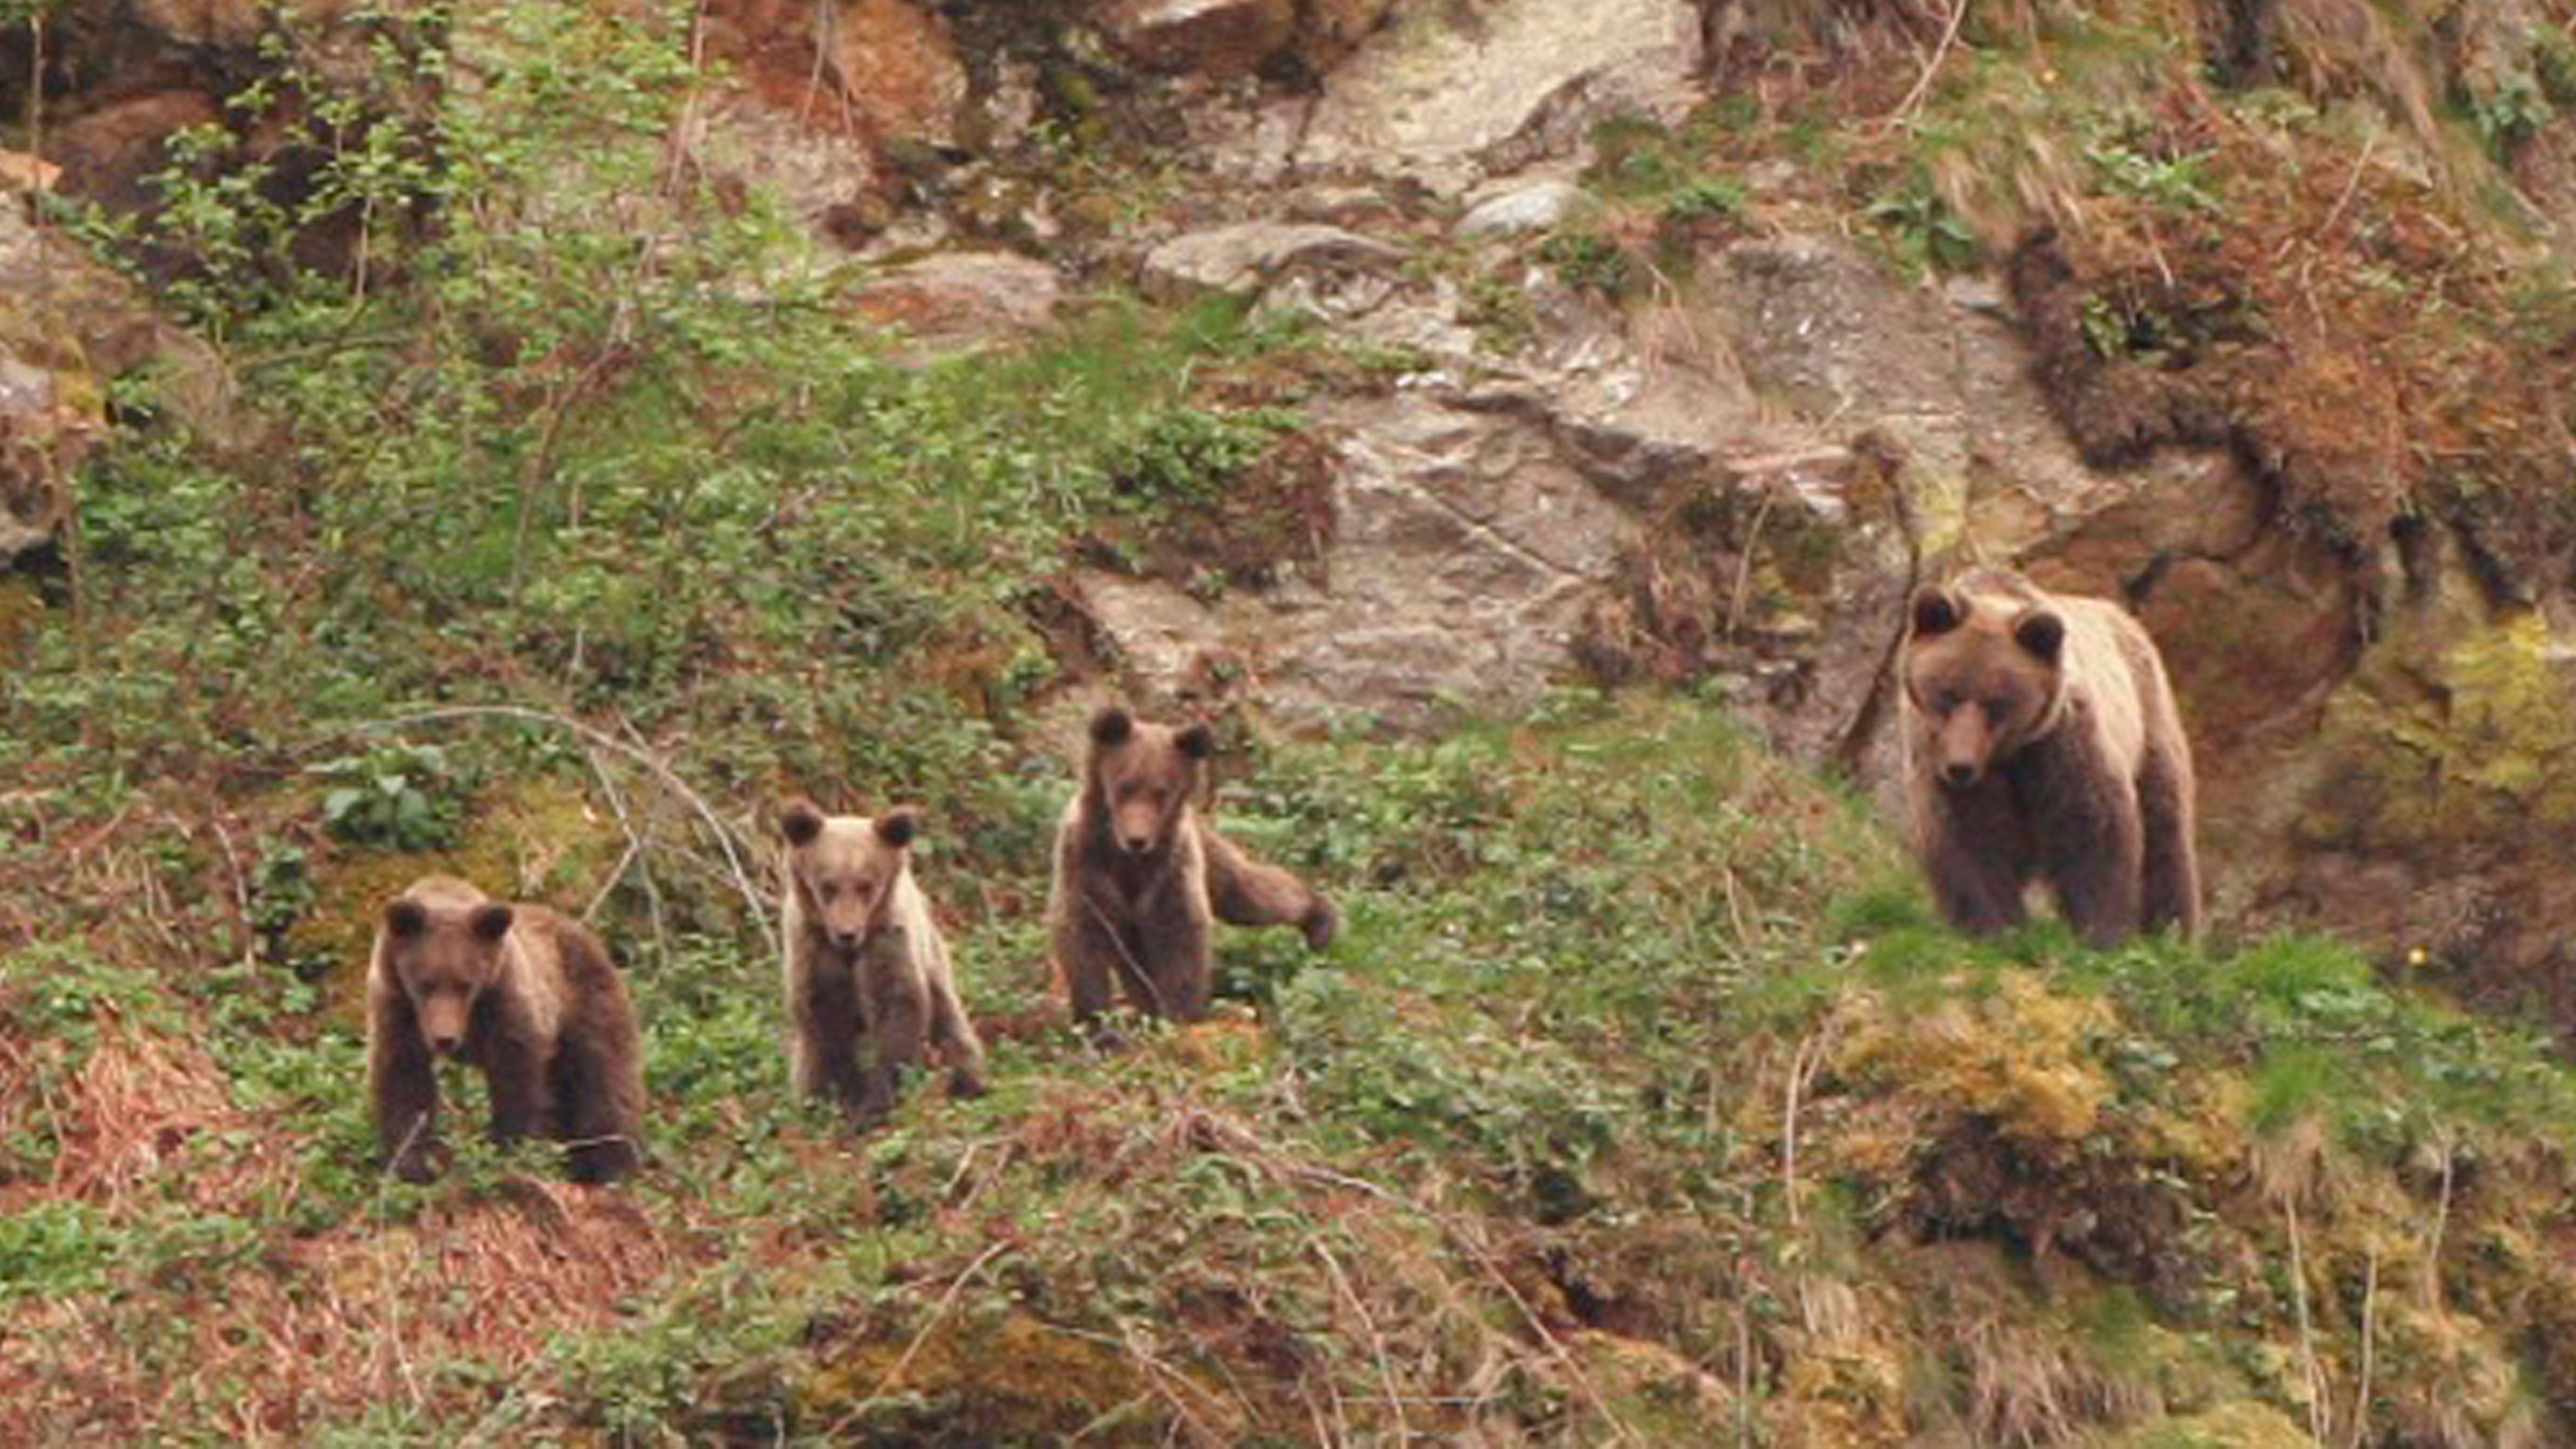 Una osezna con tres crías, una excelente noticia para el mantenimiento de la población del oso en la Cordillera Cantábrica Oriental. | FUNDACIÓN OSO PARDO